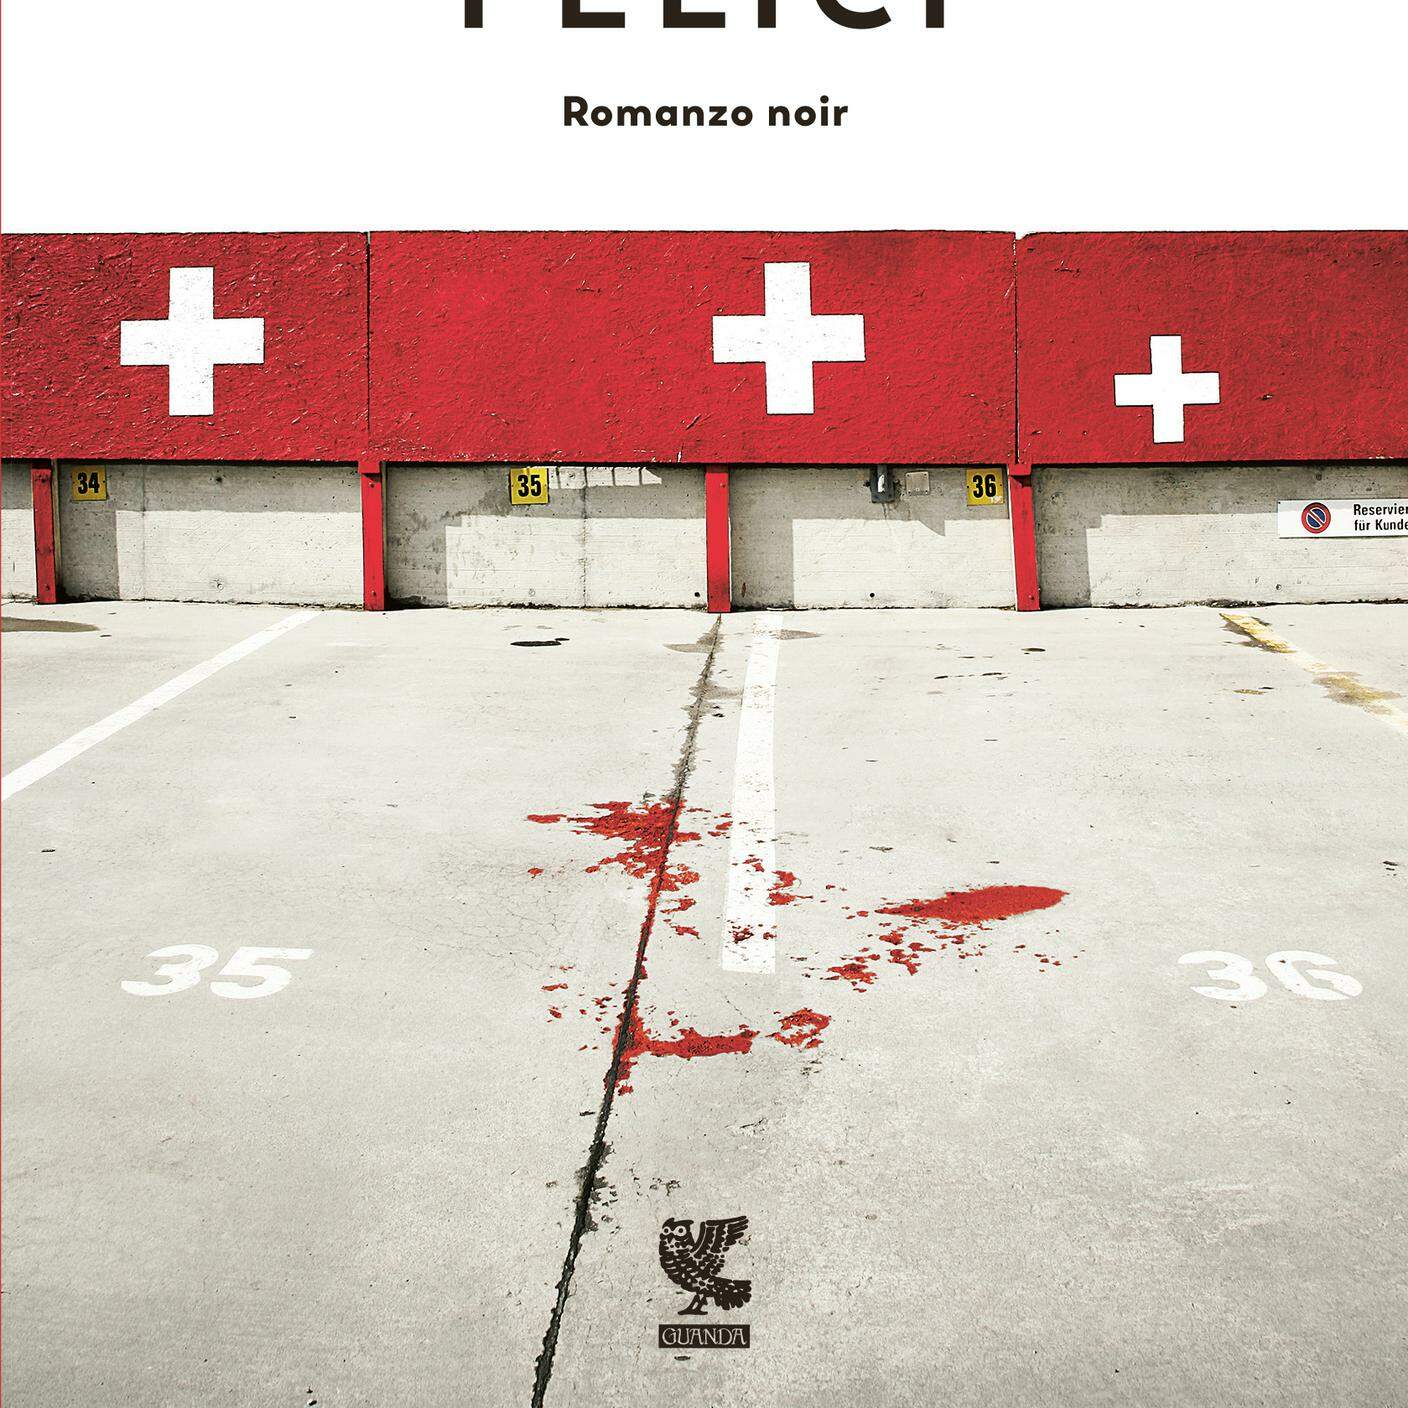 Andrea Fazioli, "Gli svizzeri muoiono felici", Guanda (dettaglio copertina)